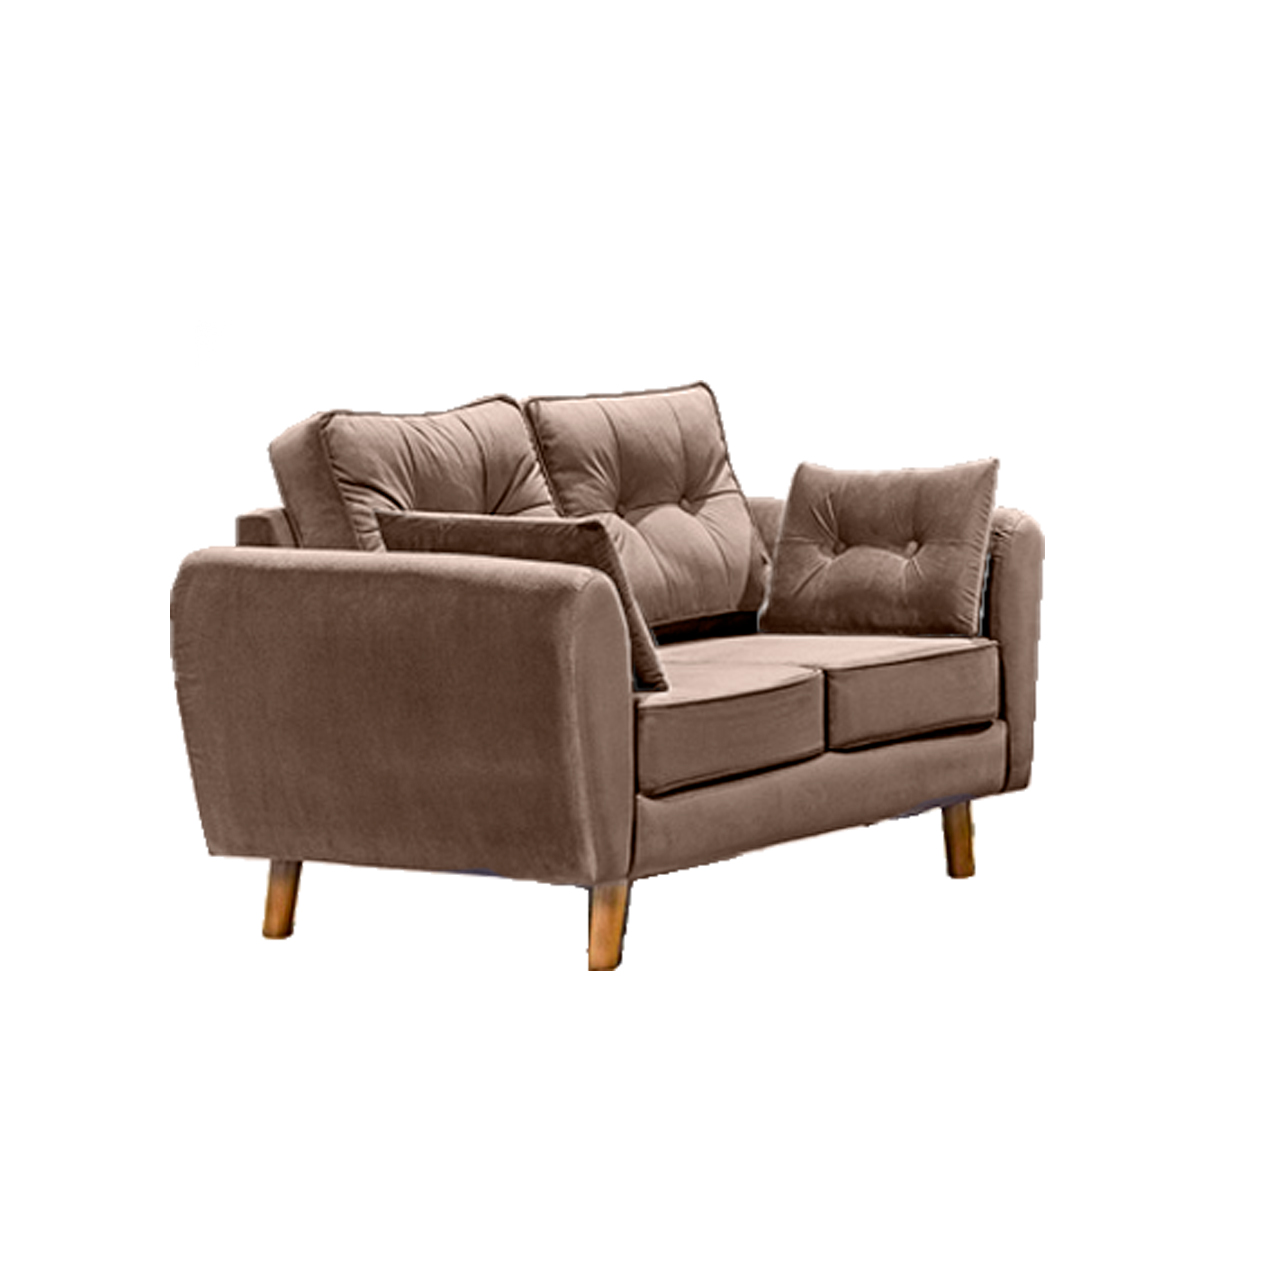 2 Seater Danish Sofa - Brown